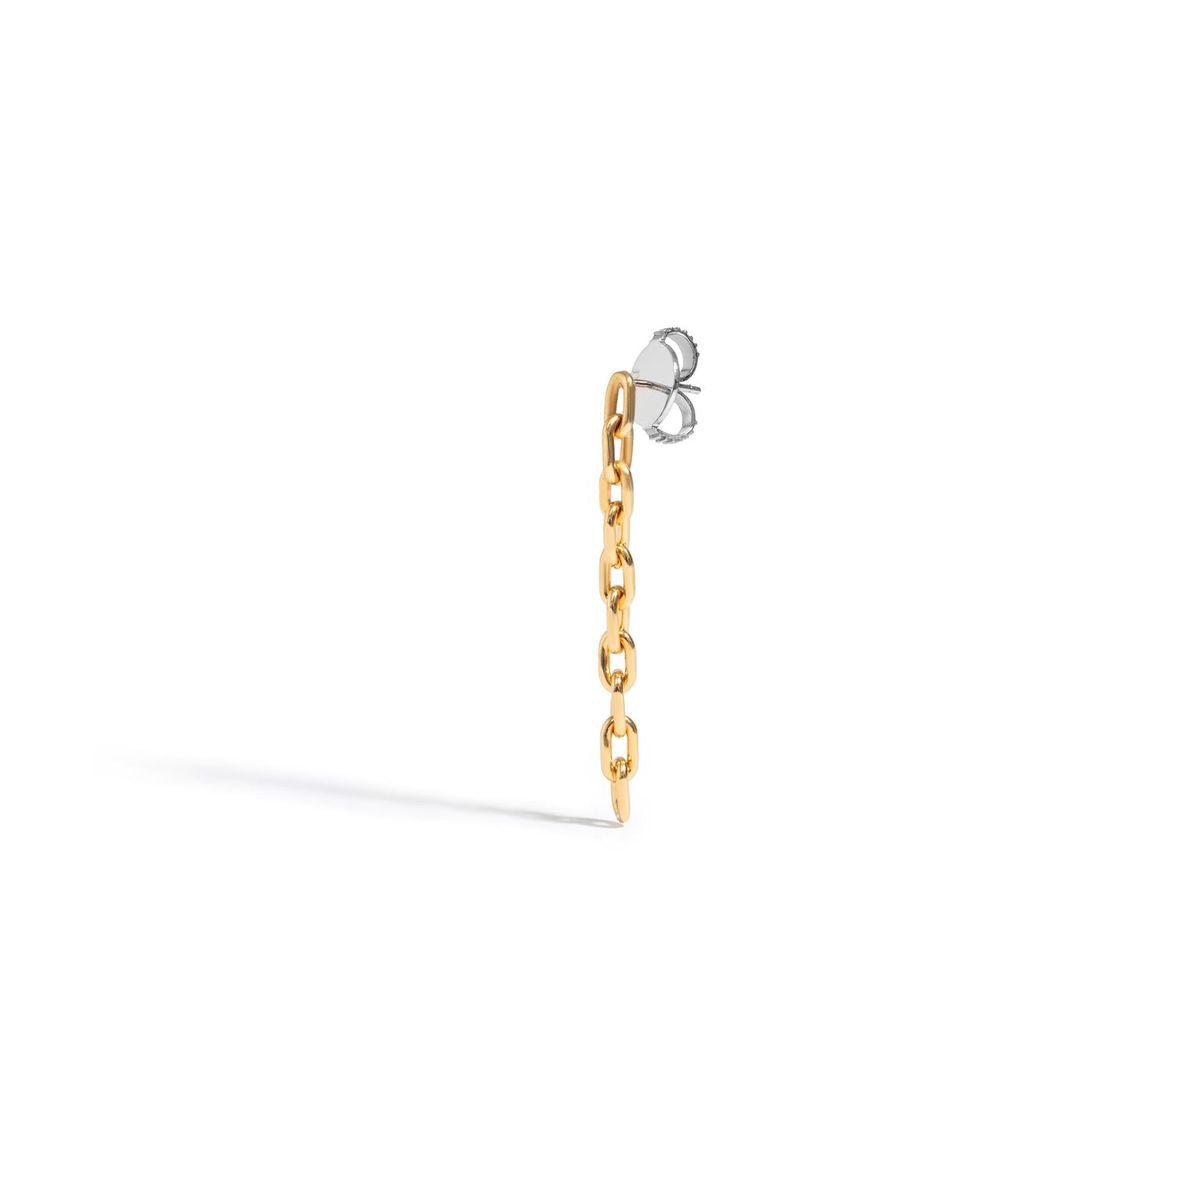 Brinco Chain - Unitário | Prata Com Ouro Amarelo 18k - Jack Vartanian - Longos E Franjas